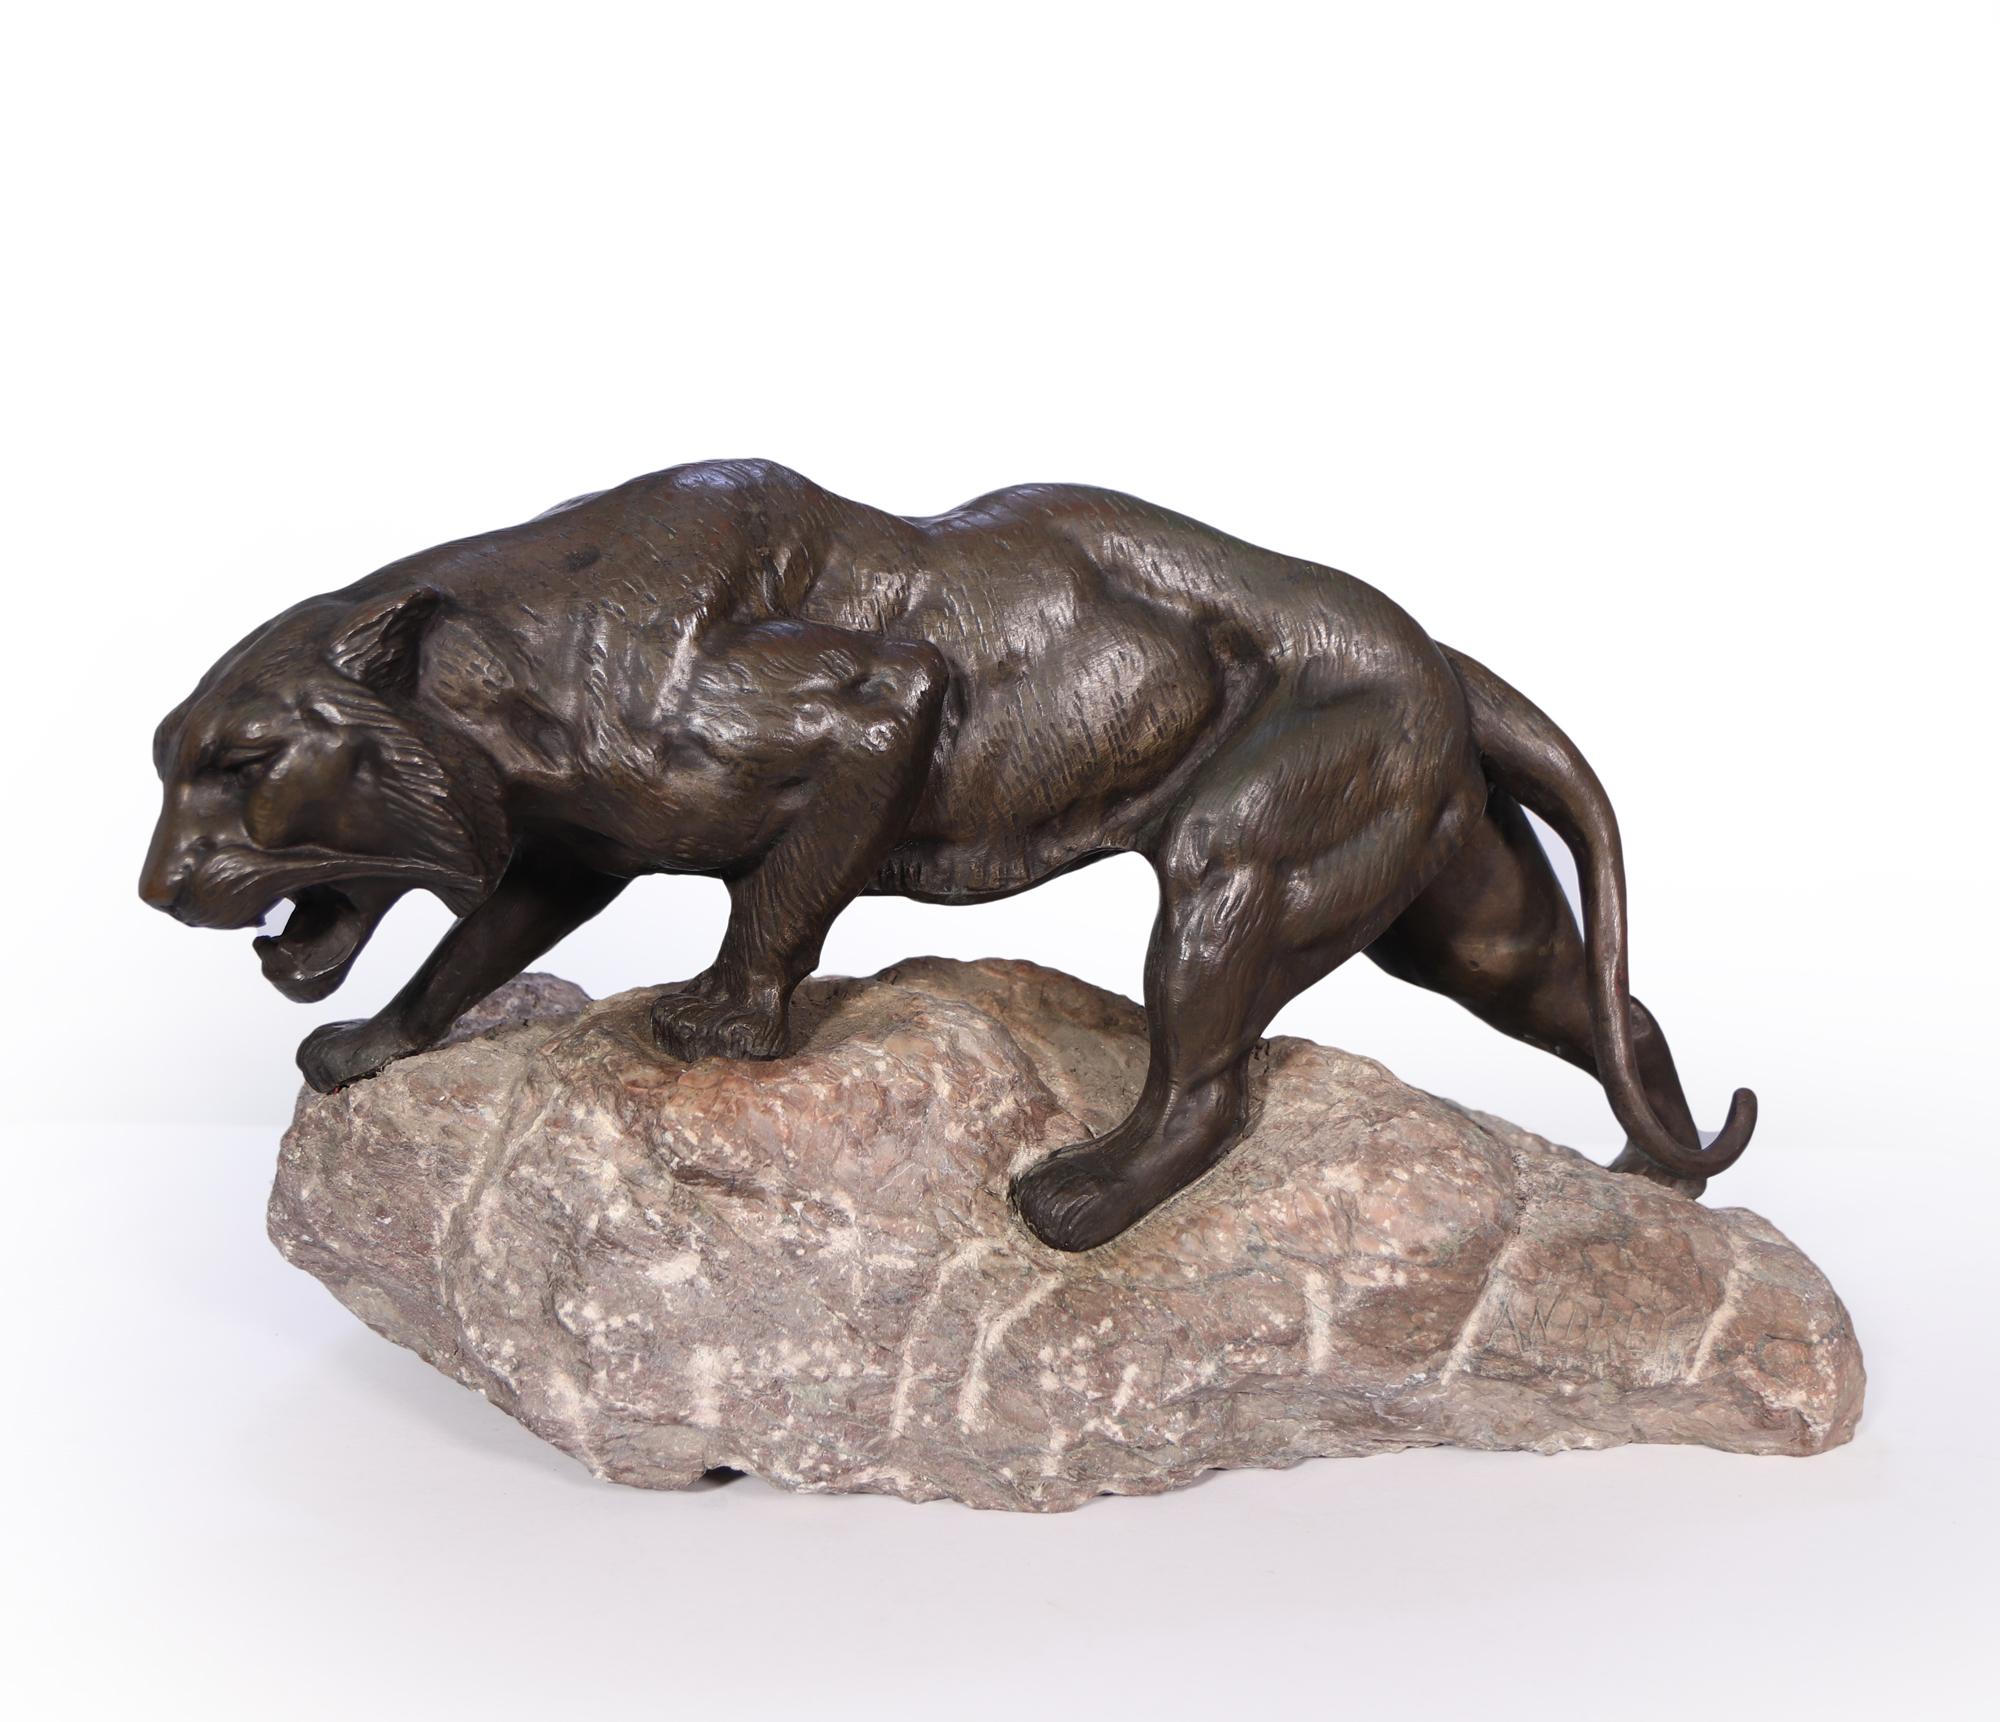 Ein gegossener Bronzetiger von James Andrey, der in den 1920er Jahren in Frankreich hergestellt wurde. Dieser Tiger wurde auf einem grob geschnittenen Marmorsockel mit der Inschrift ANDREY

Alter: 1920

Stil: Bronze-Skulptur

Material: